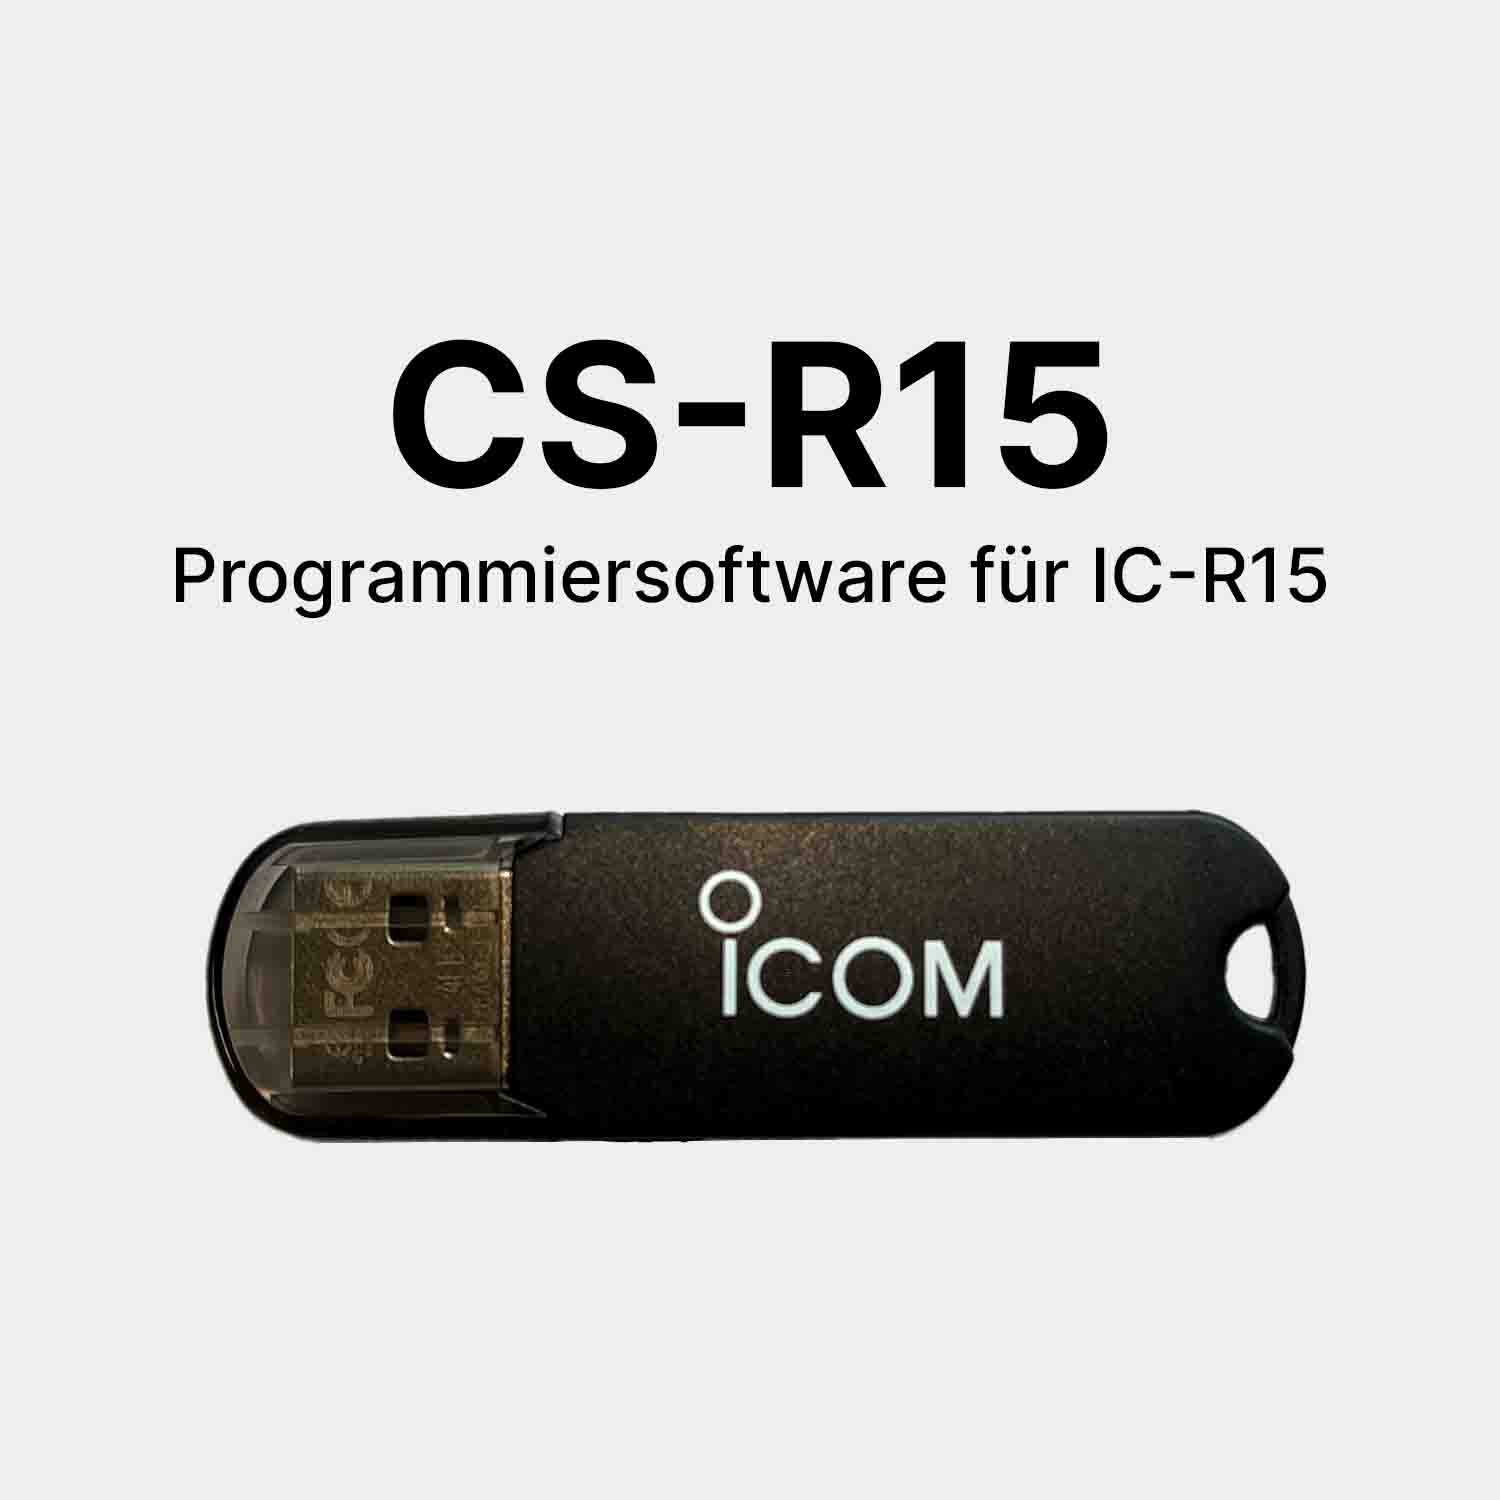 Icom CS-R15 Programmiersoftware für IC-R15